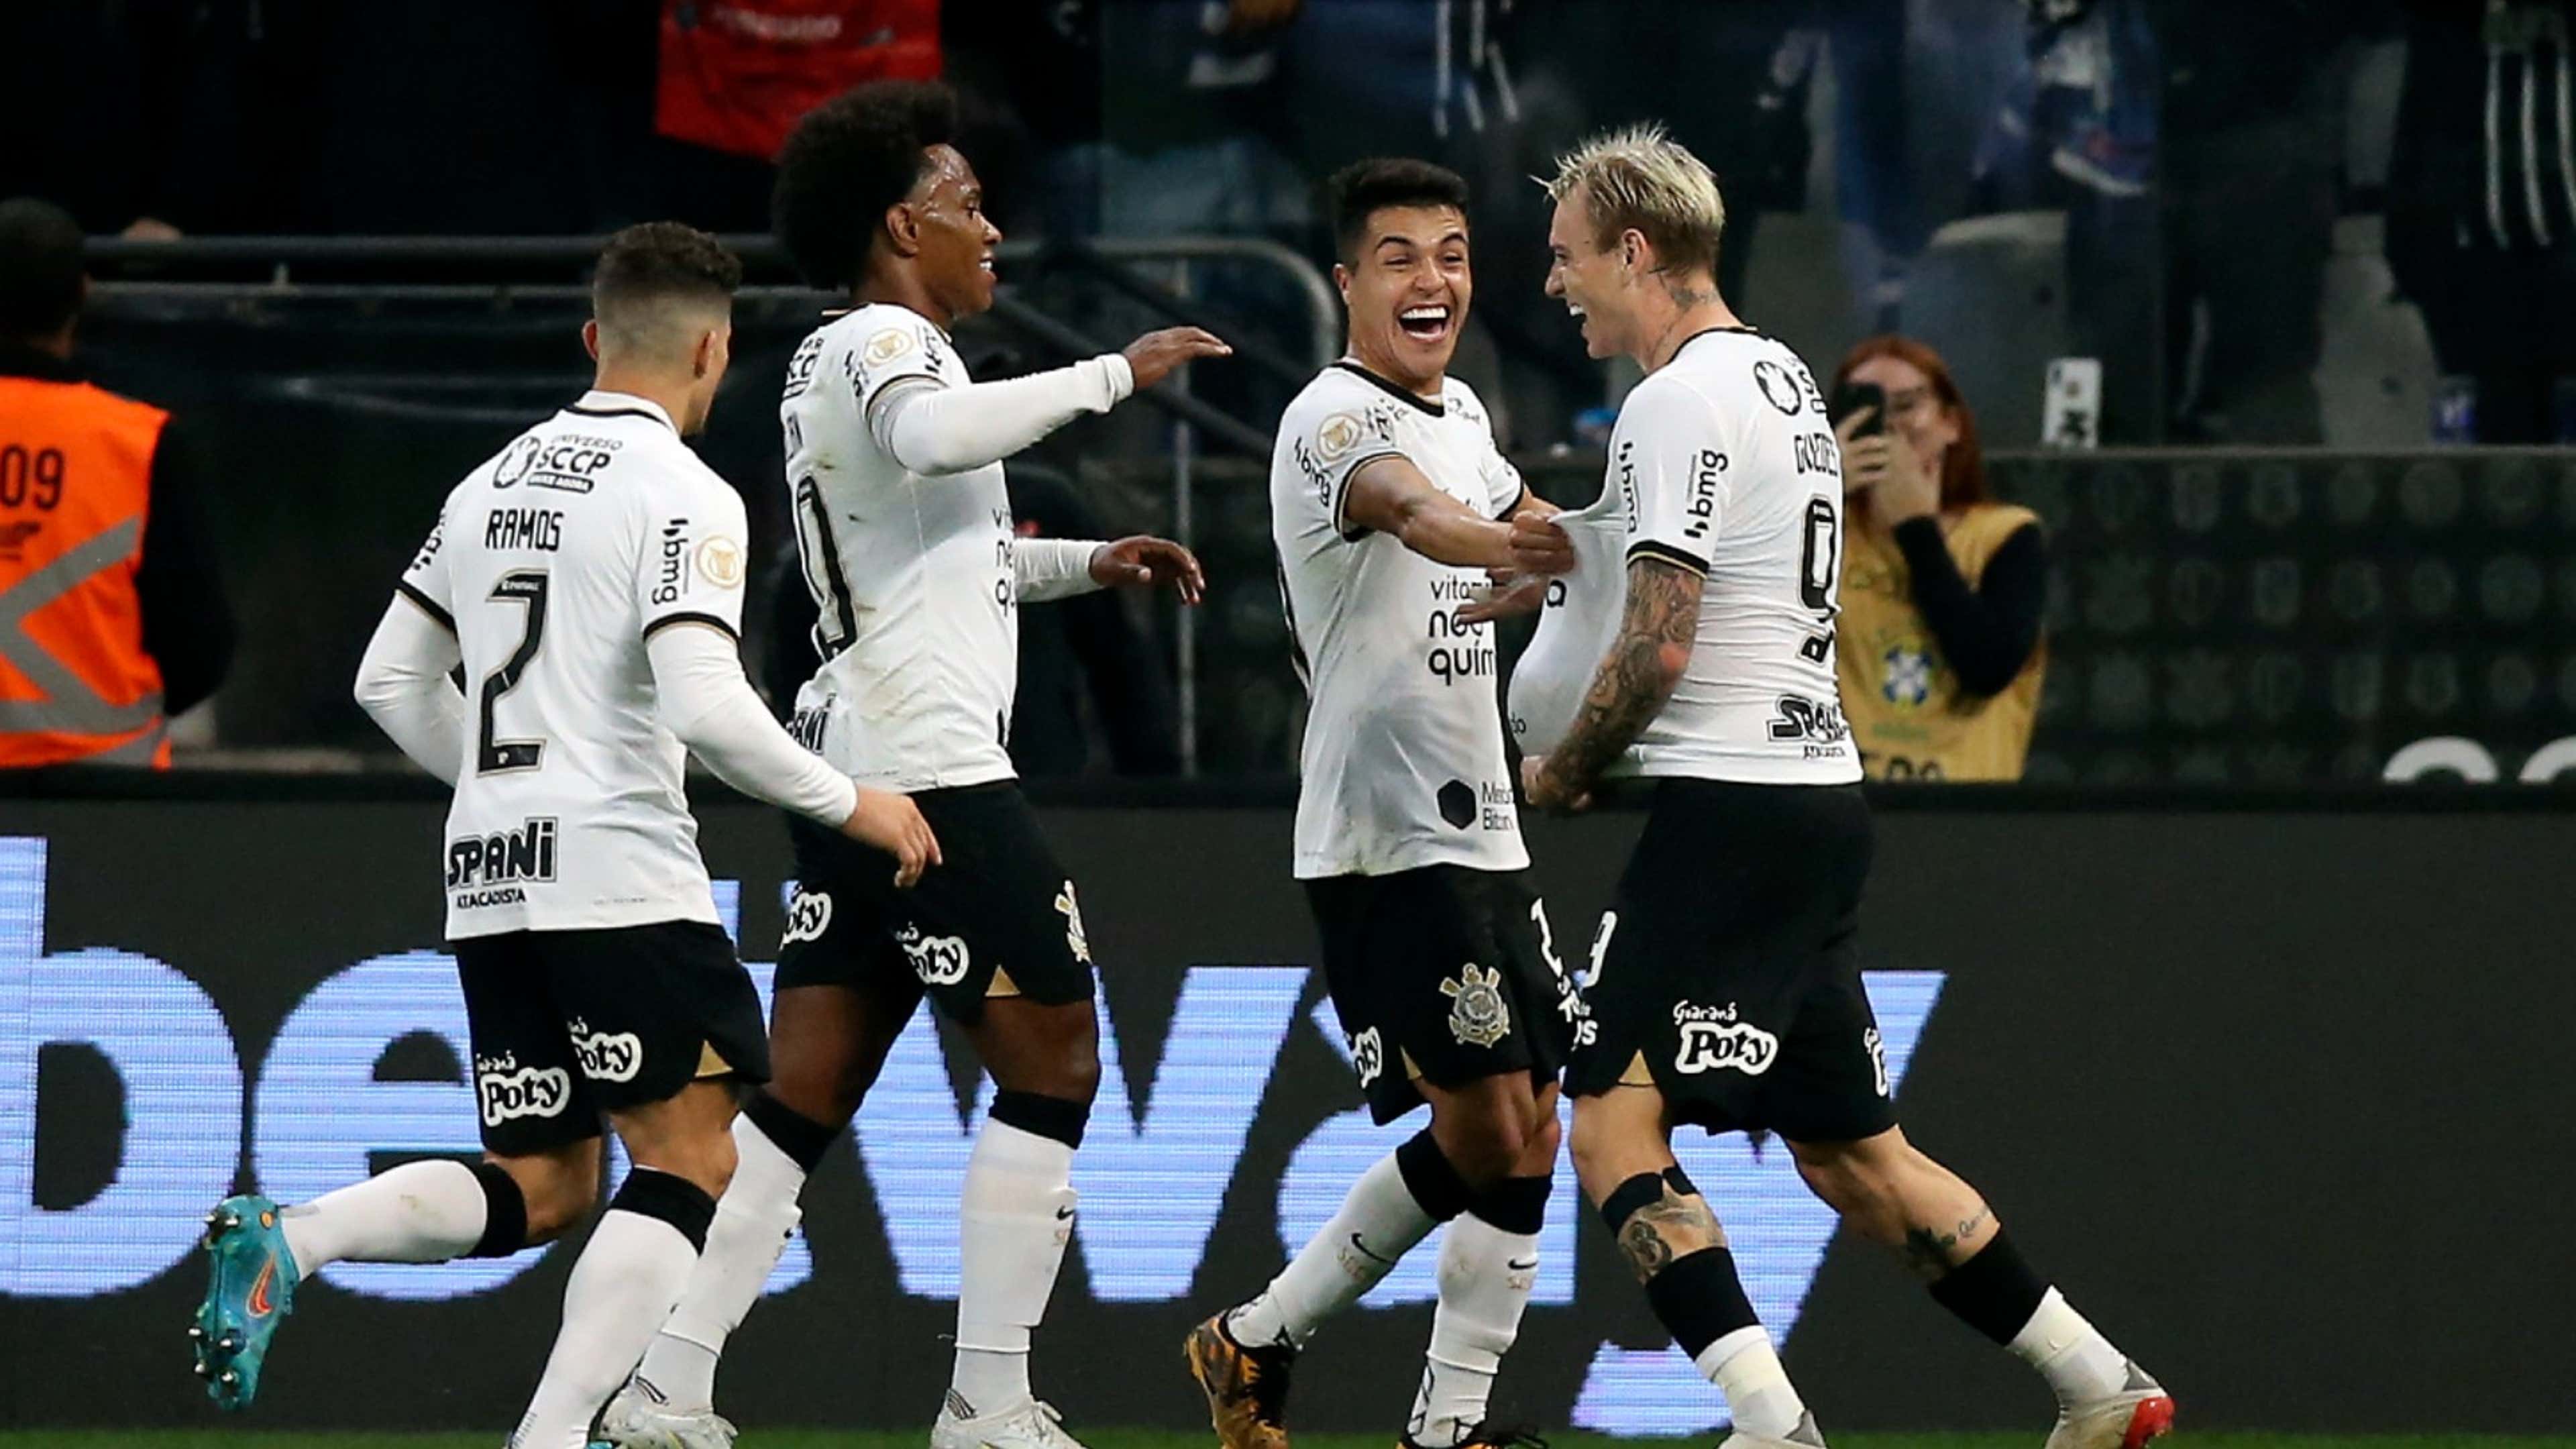 Corinthians e Coritiba empatam em jogo agitado pelo Brasileirão